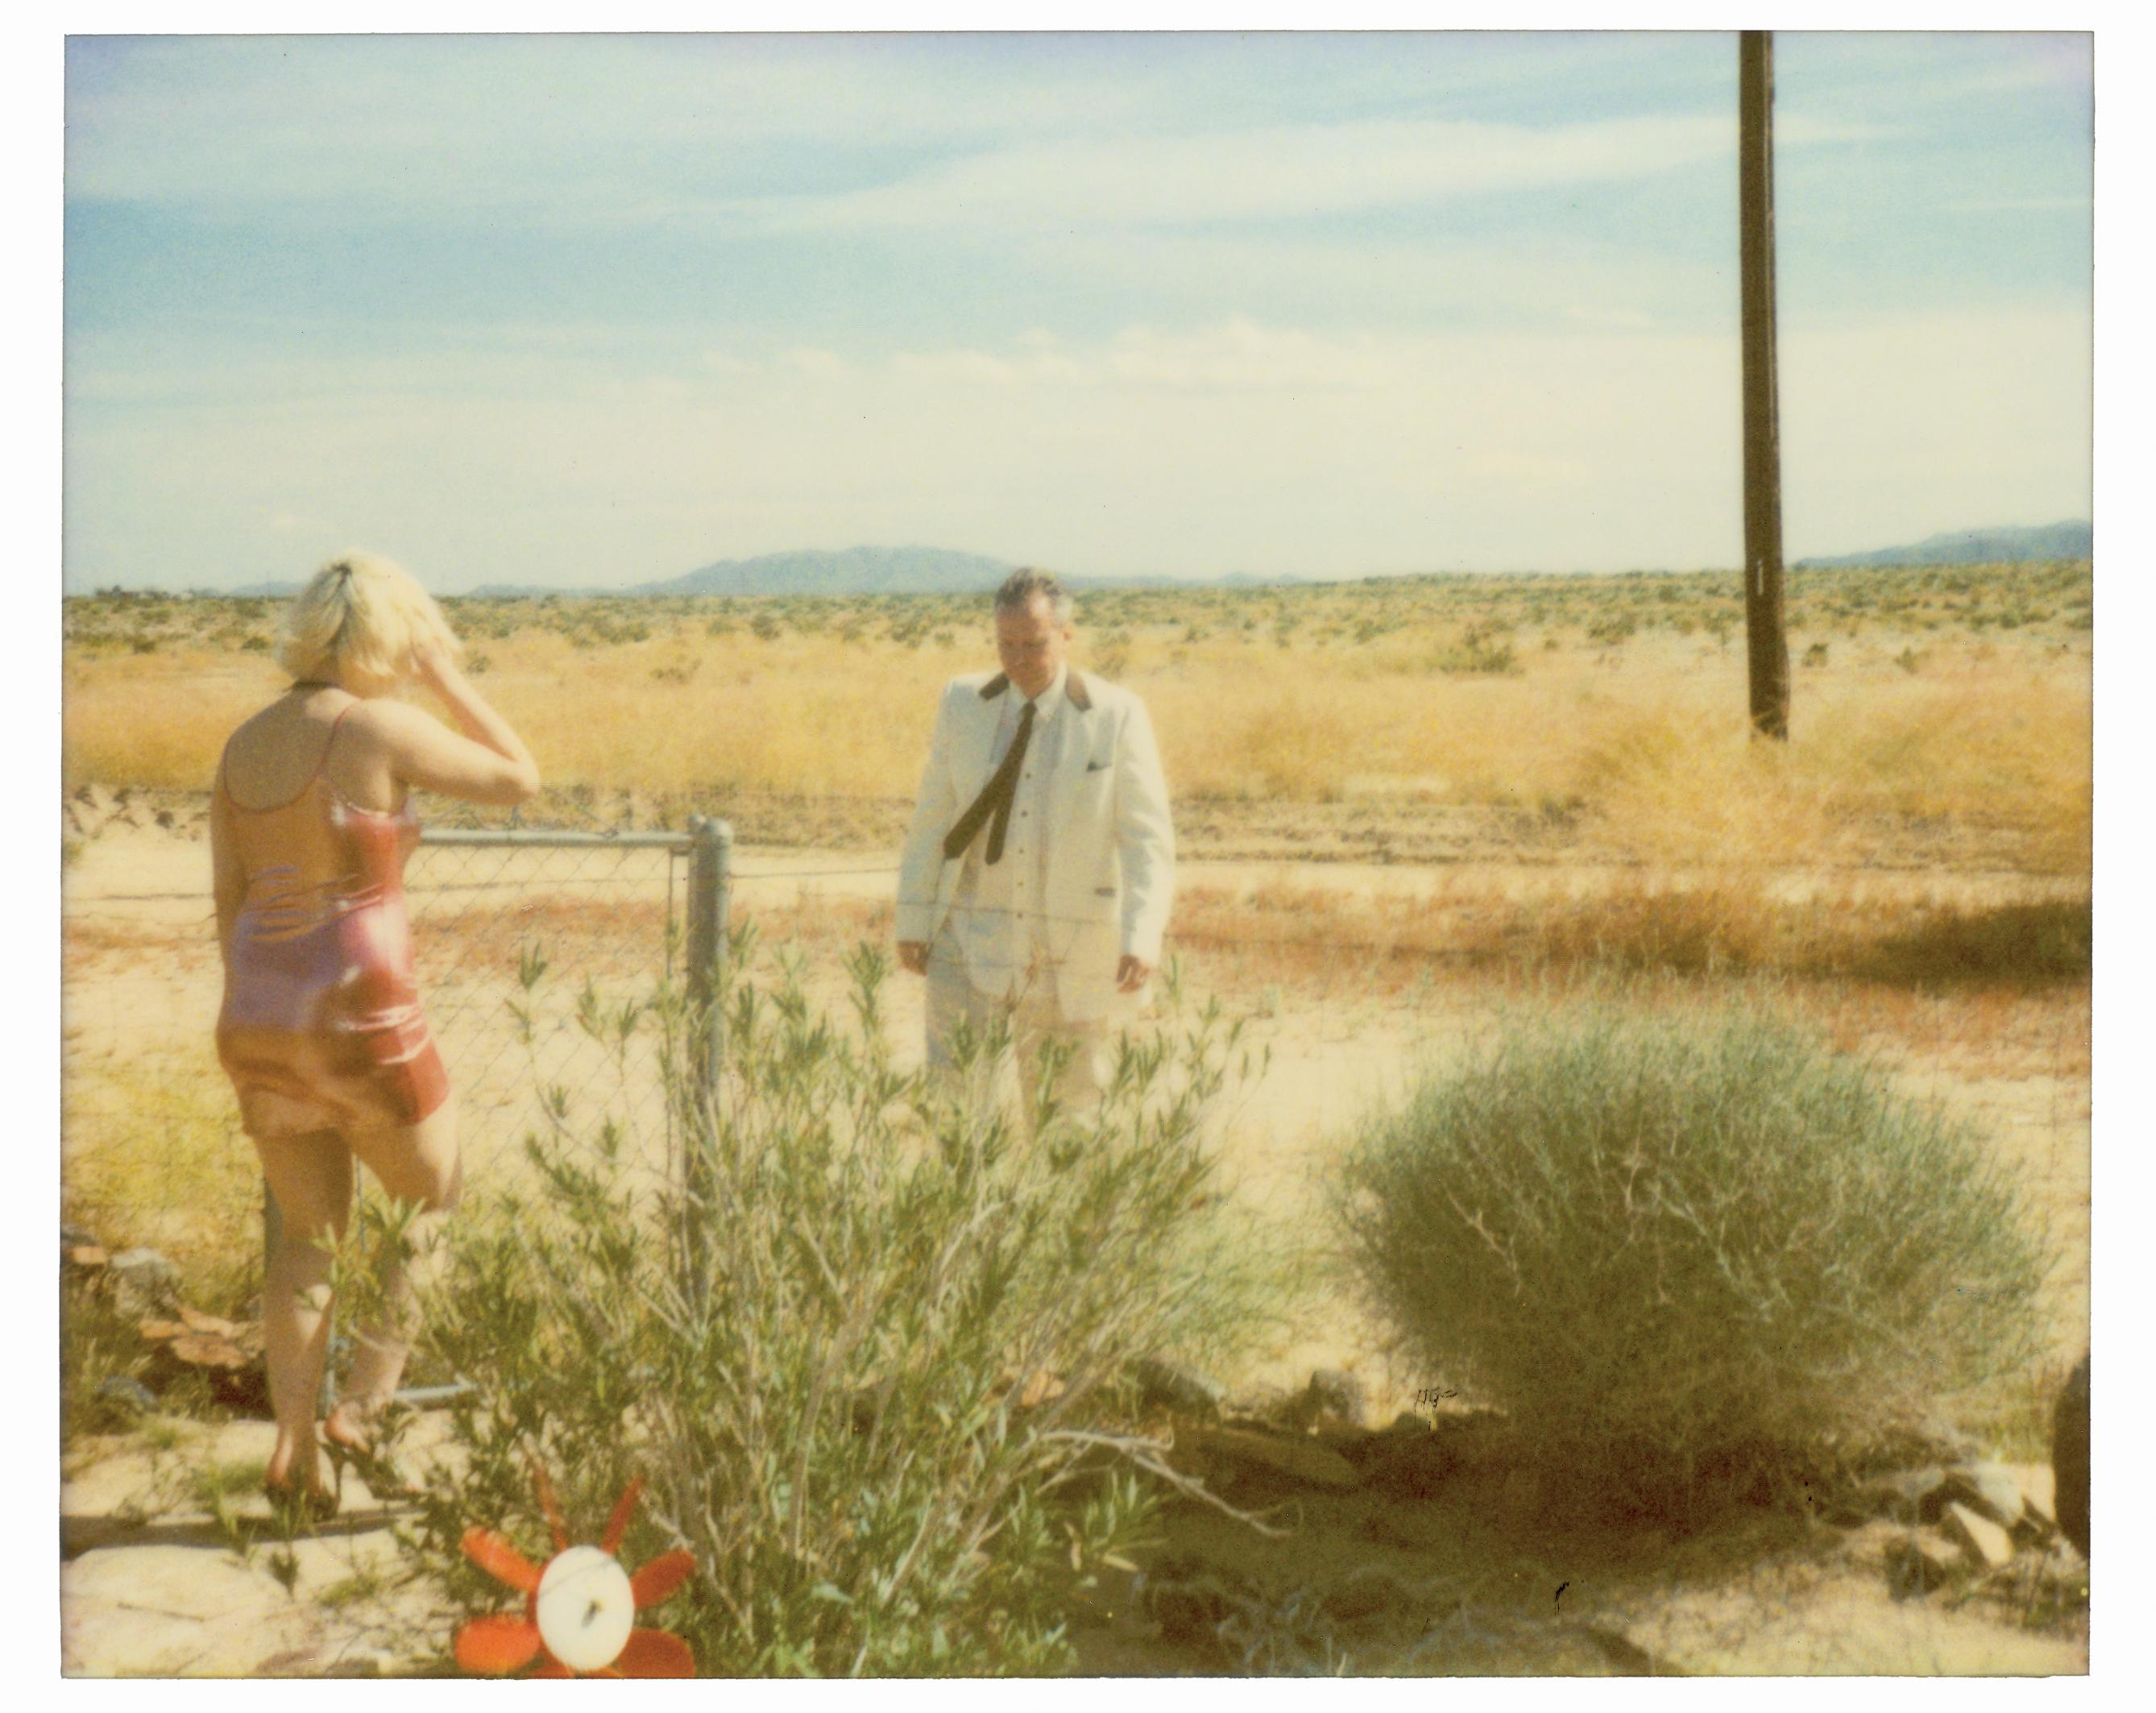 Landscape Photograph Stefanie Schneider - Wonder Valley (29 Palms, CA) - analogique, monté, installation, musique, vidéo, texte